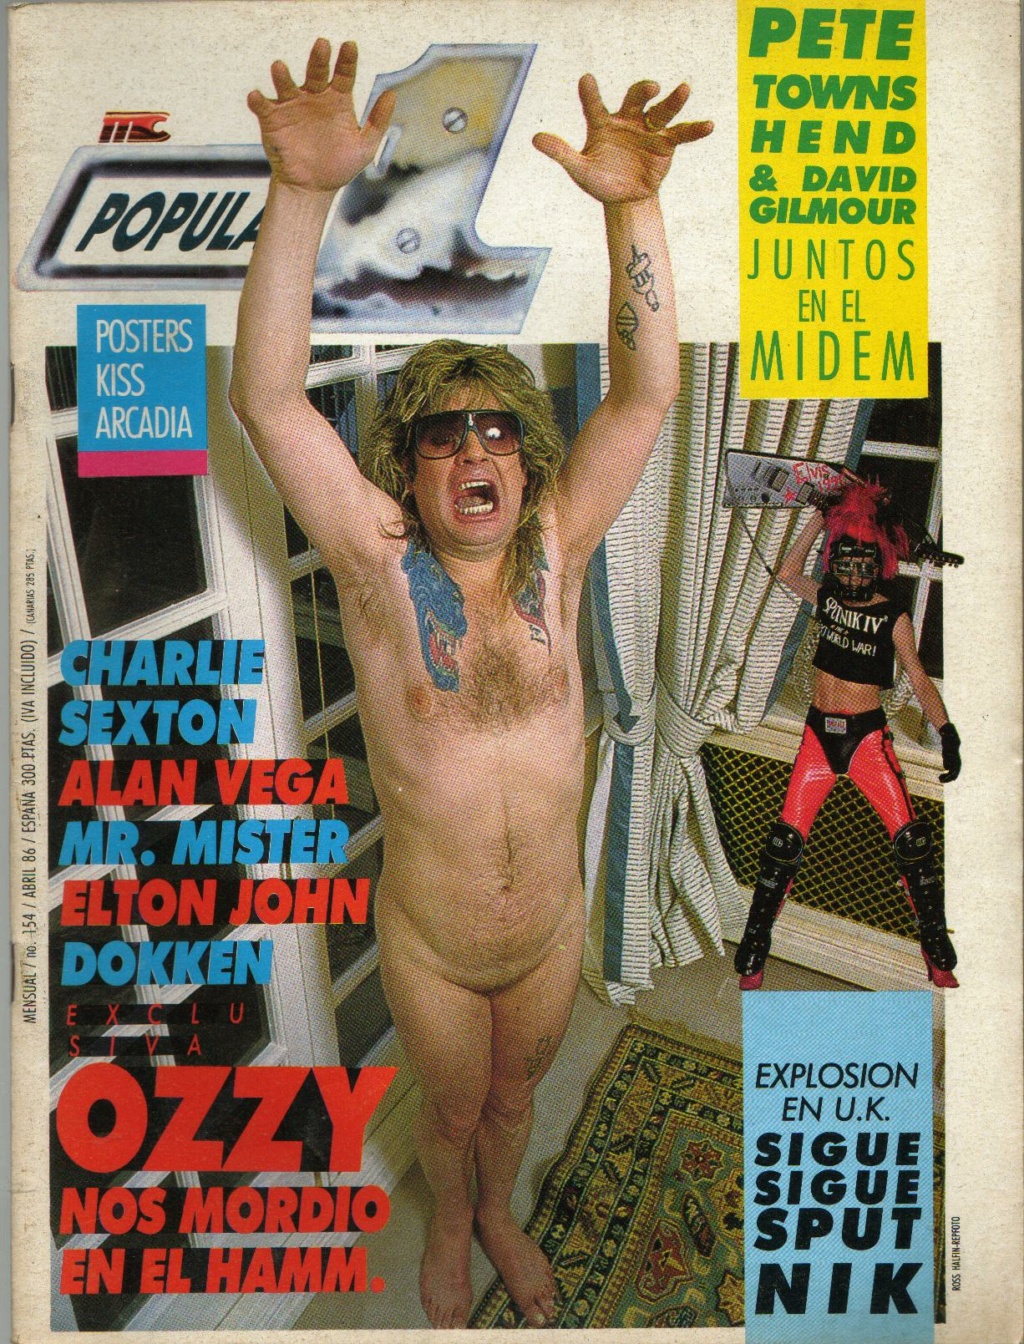 La peor foto de Ozzy - Página 2 Popula92